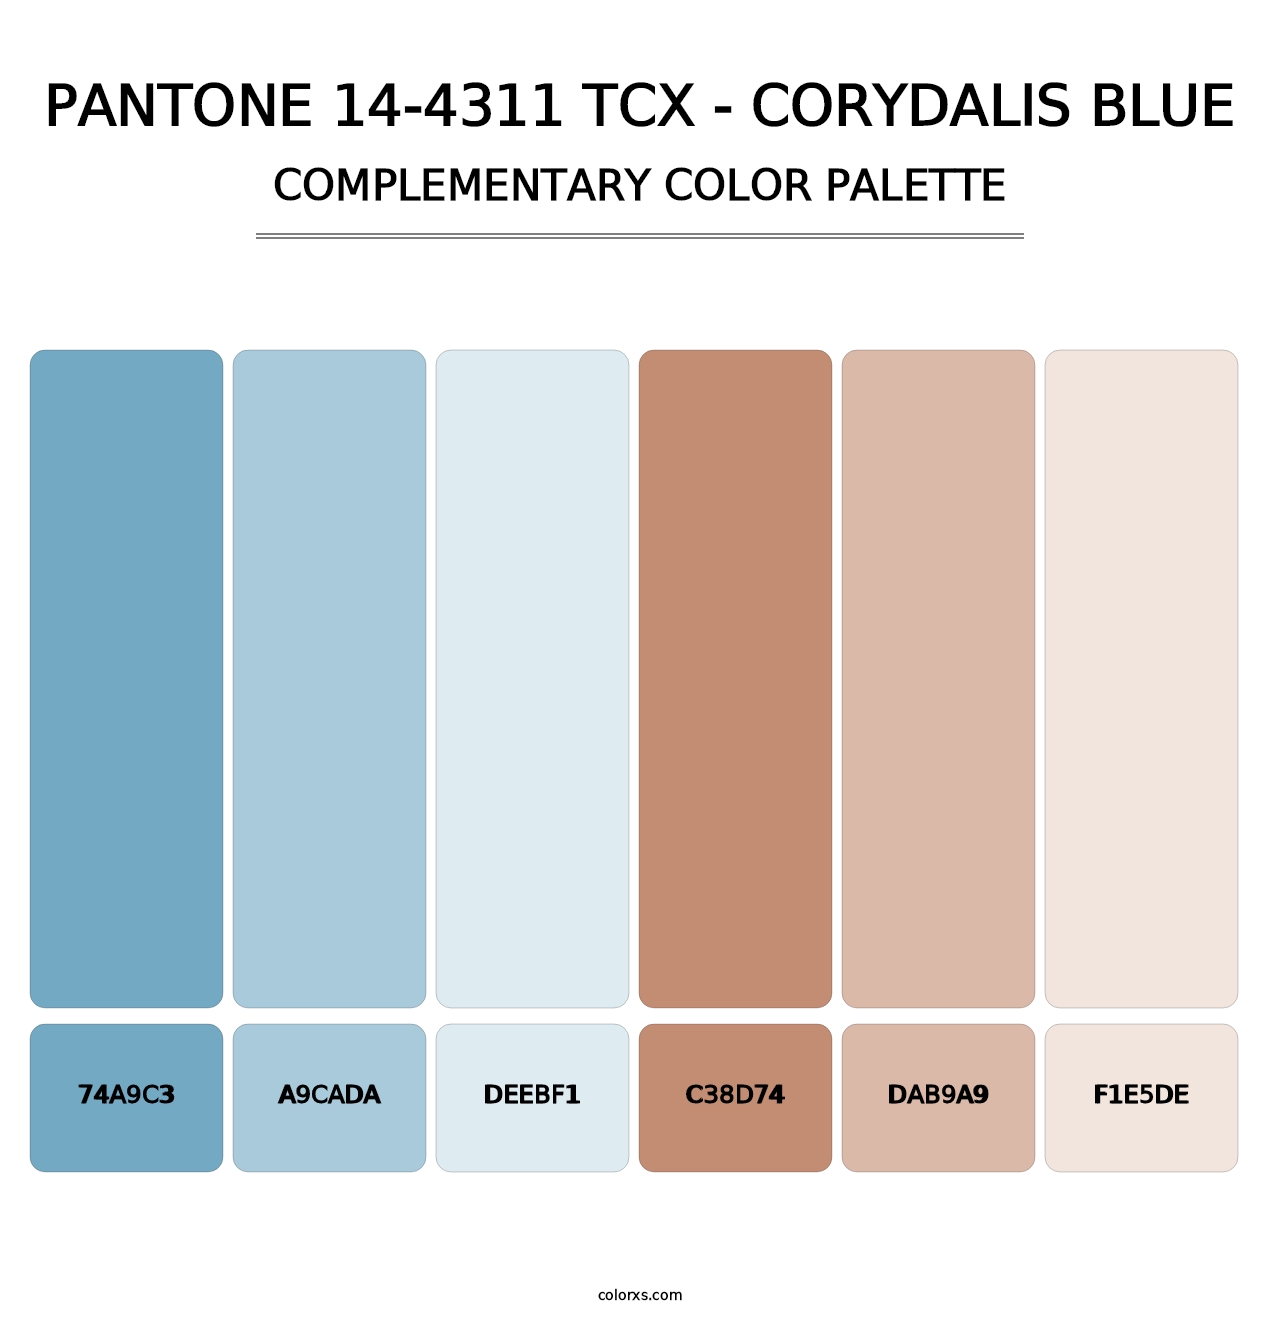 PANTONE 14-4311 TCX - Corydalis Blue - Complementary Color Palette